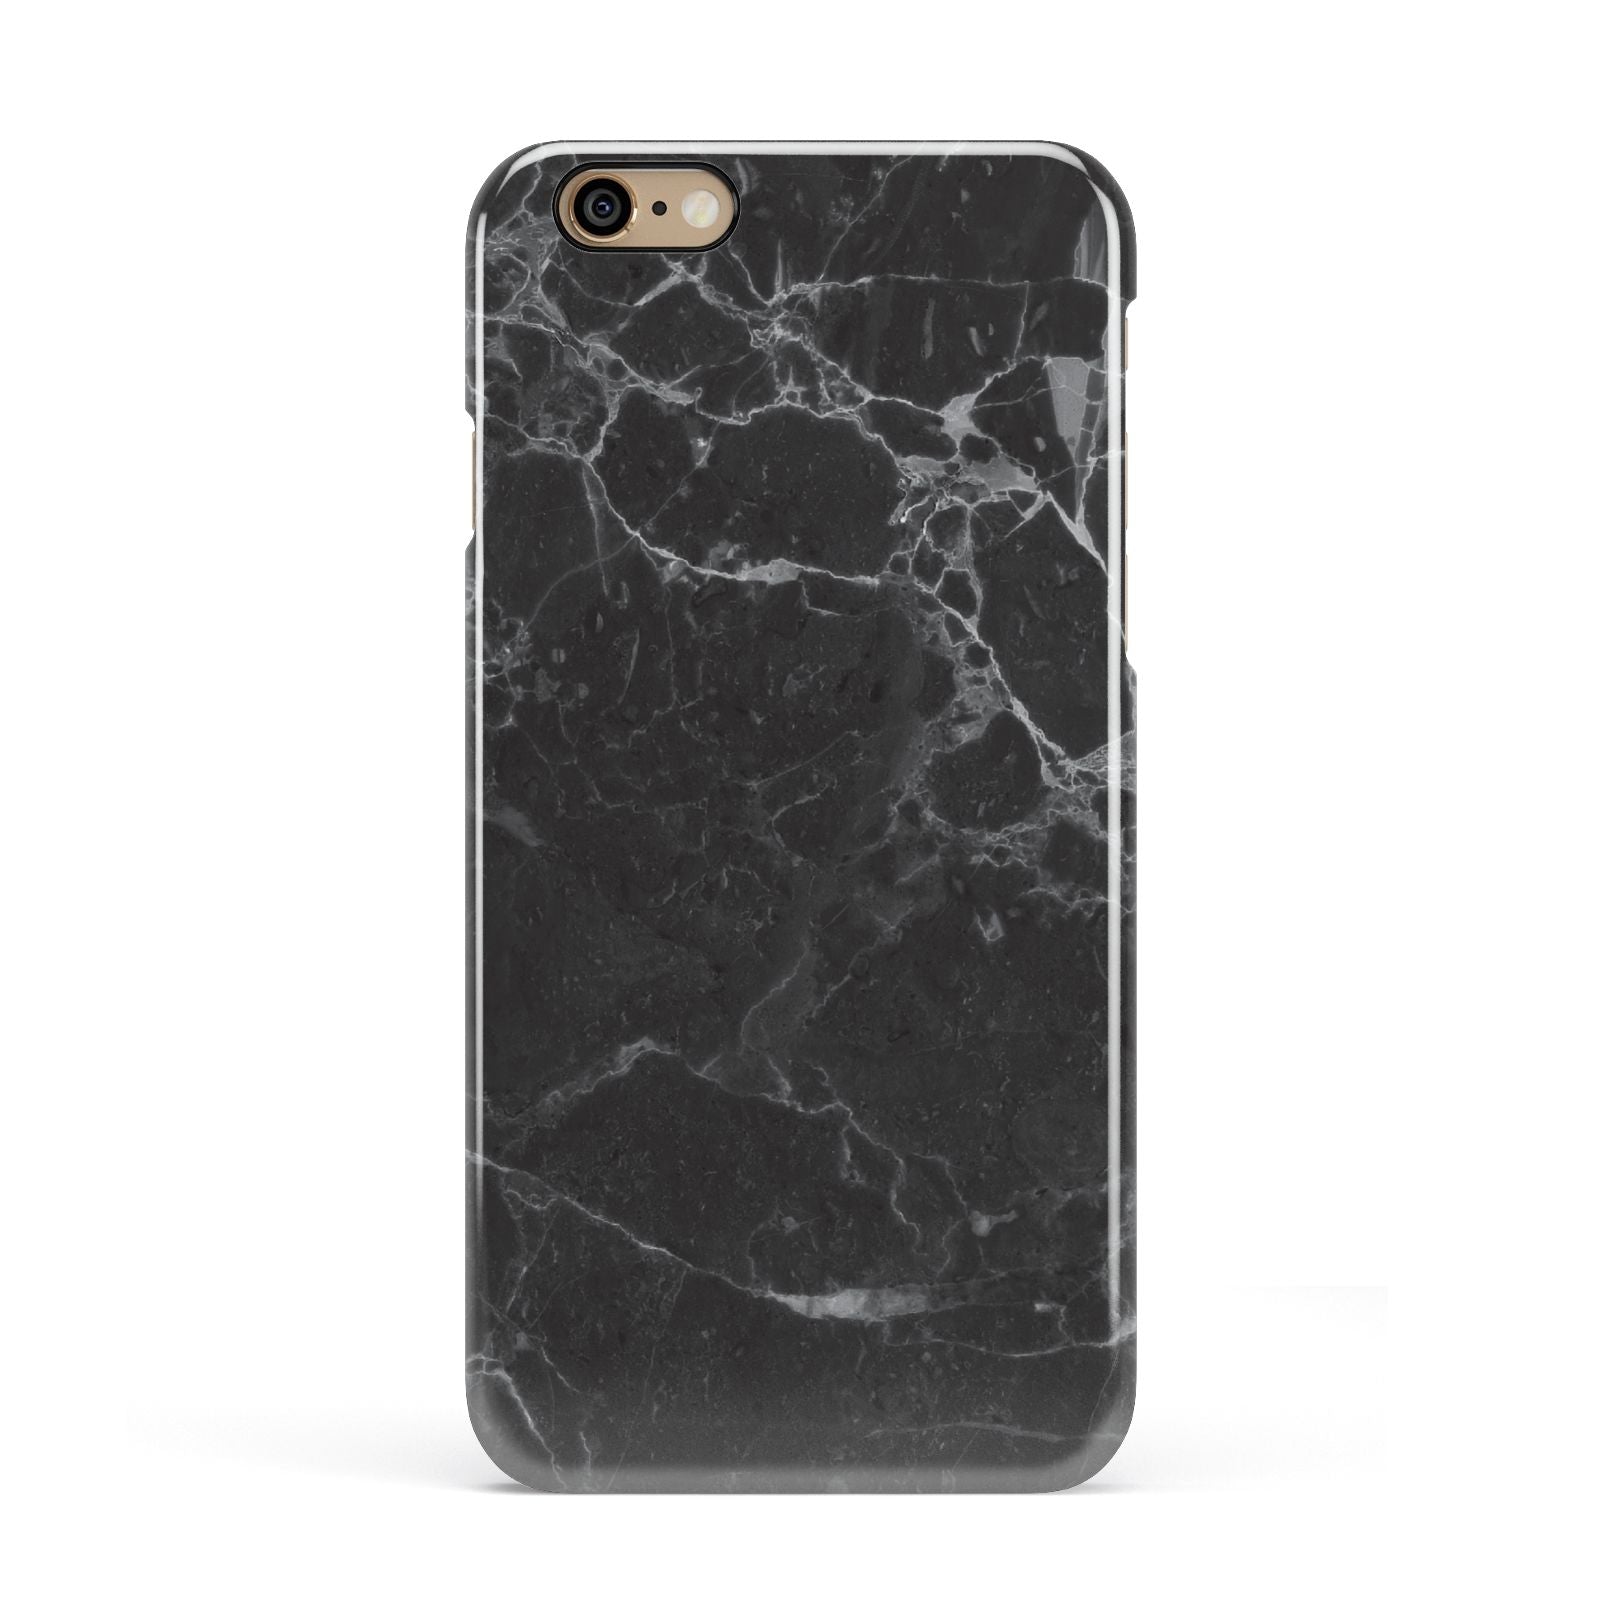 Faux Marble Effect Black Apple iPhone 6 3D Snap Case